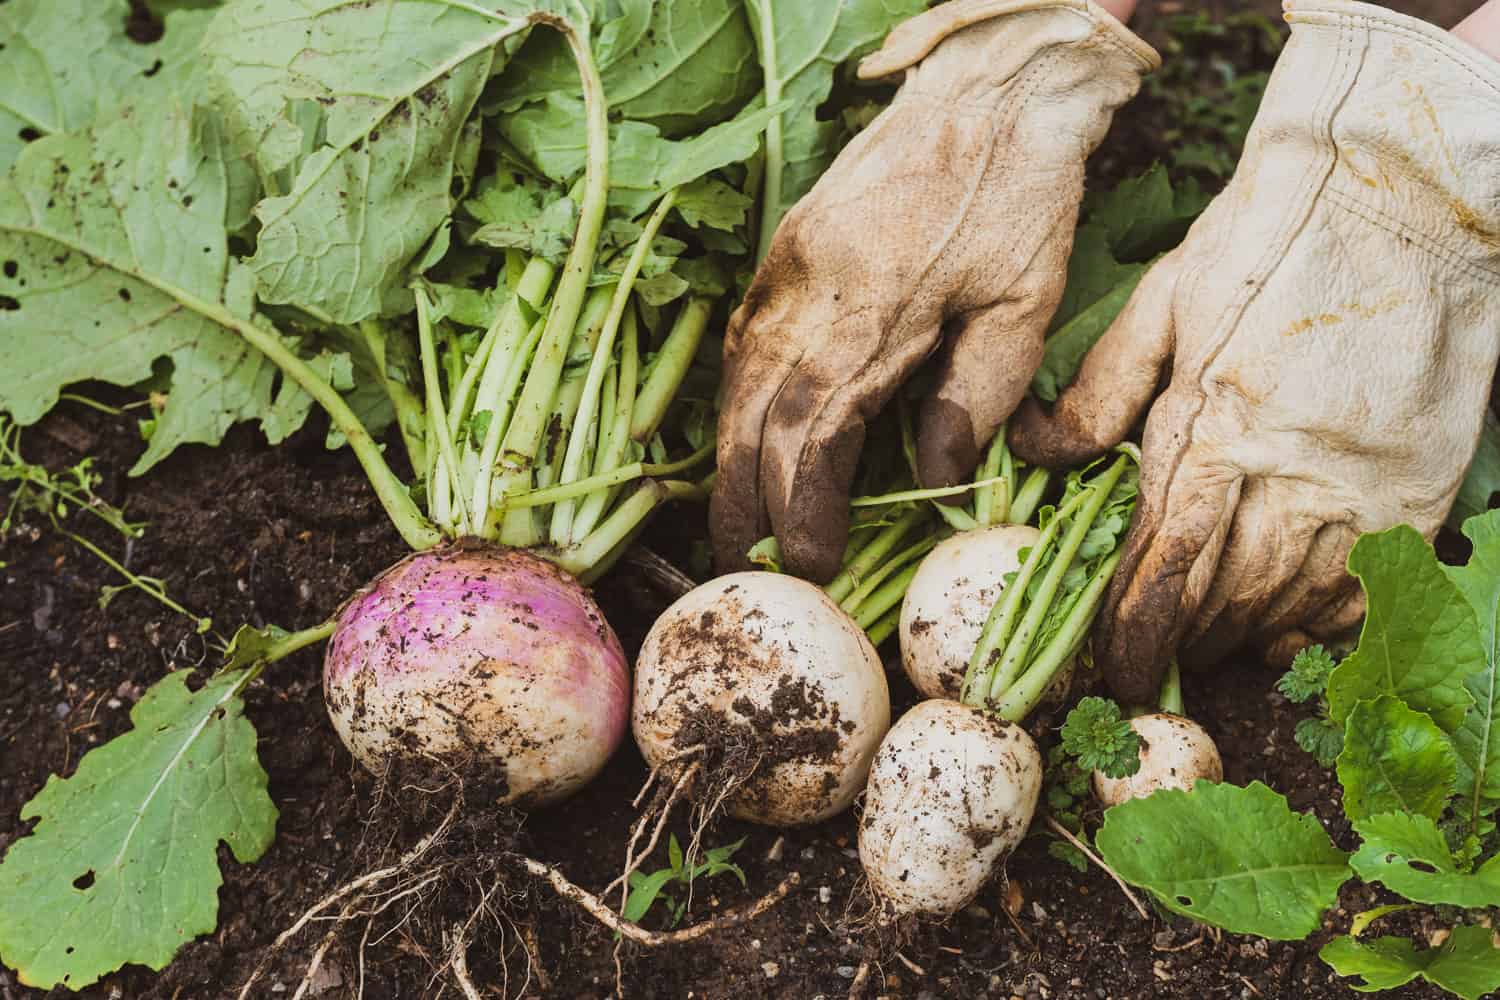 Gardener harvesting turnips in the garden